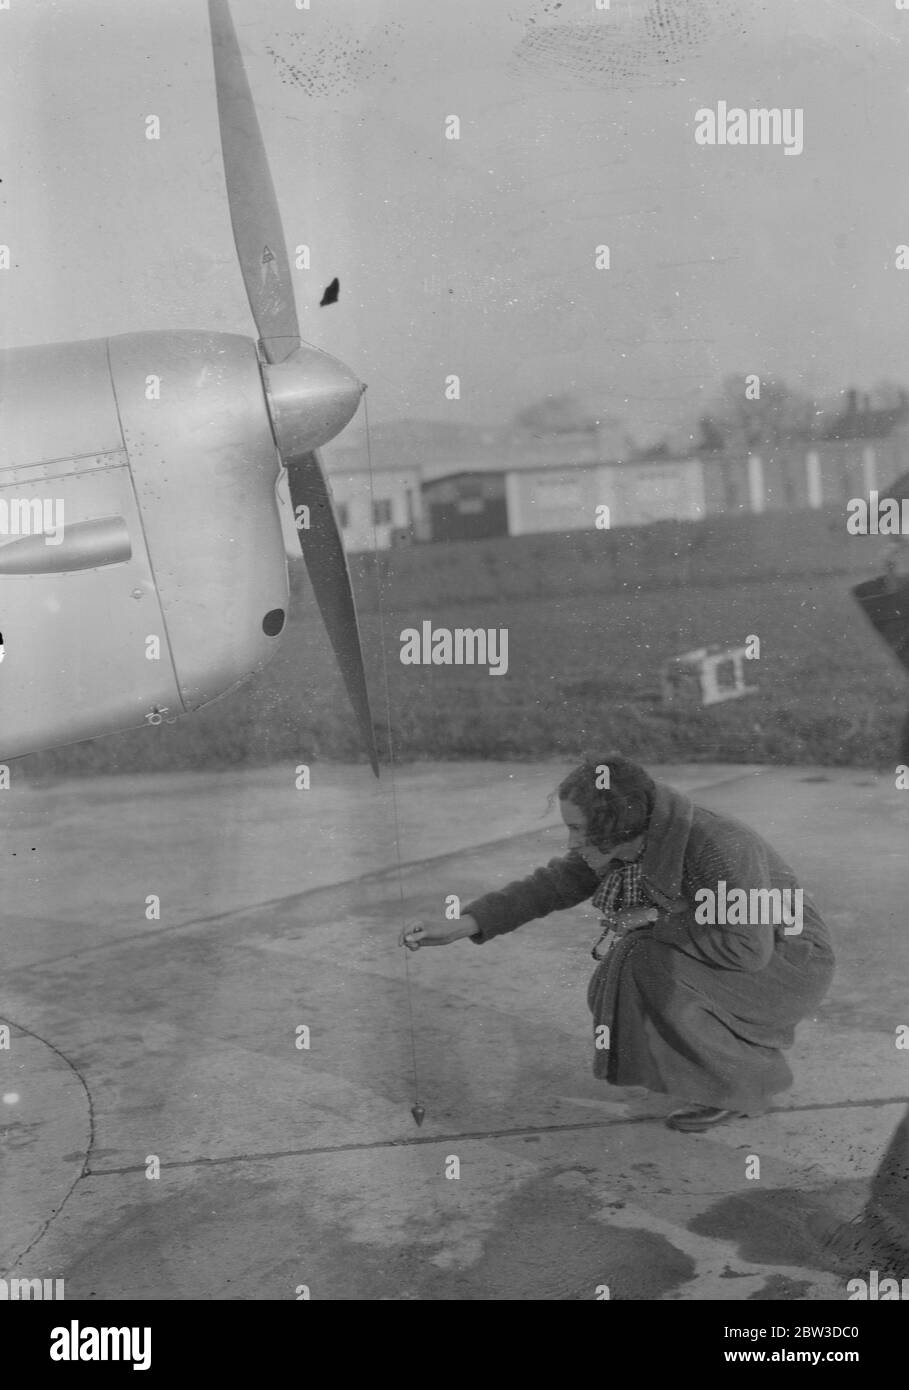 Jean Batten erste Airwoman, die den Südatlantik überqueren - hebt von Hatfield ab. Miss Jean Batten testet ihren Revolver, bevor sie Hatfield verlässt. Sie ist gezwungen, eine von den französischen Behörden zu tragen. November 1935 Stockfoto